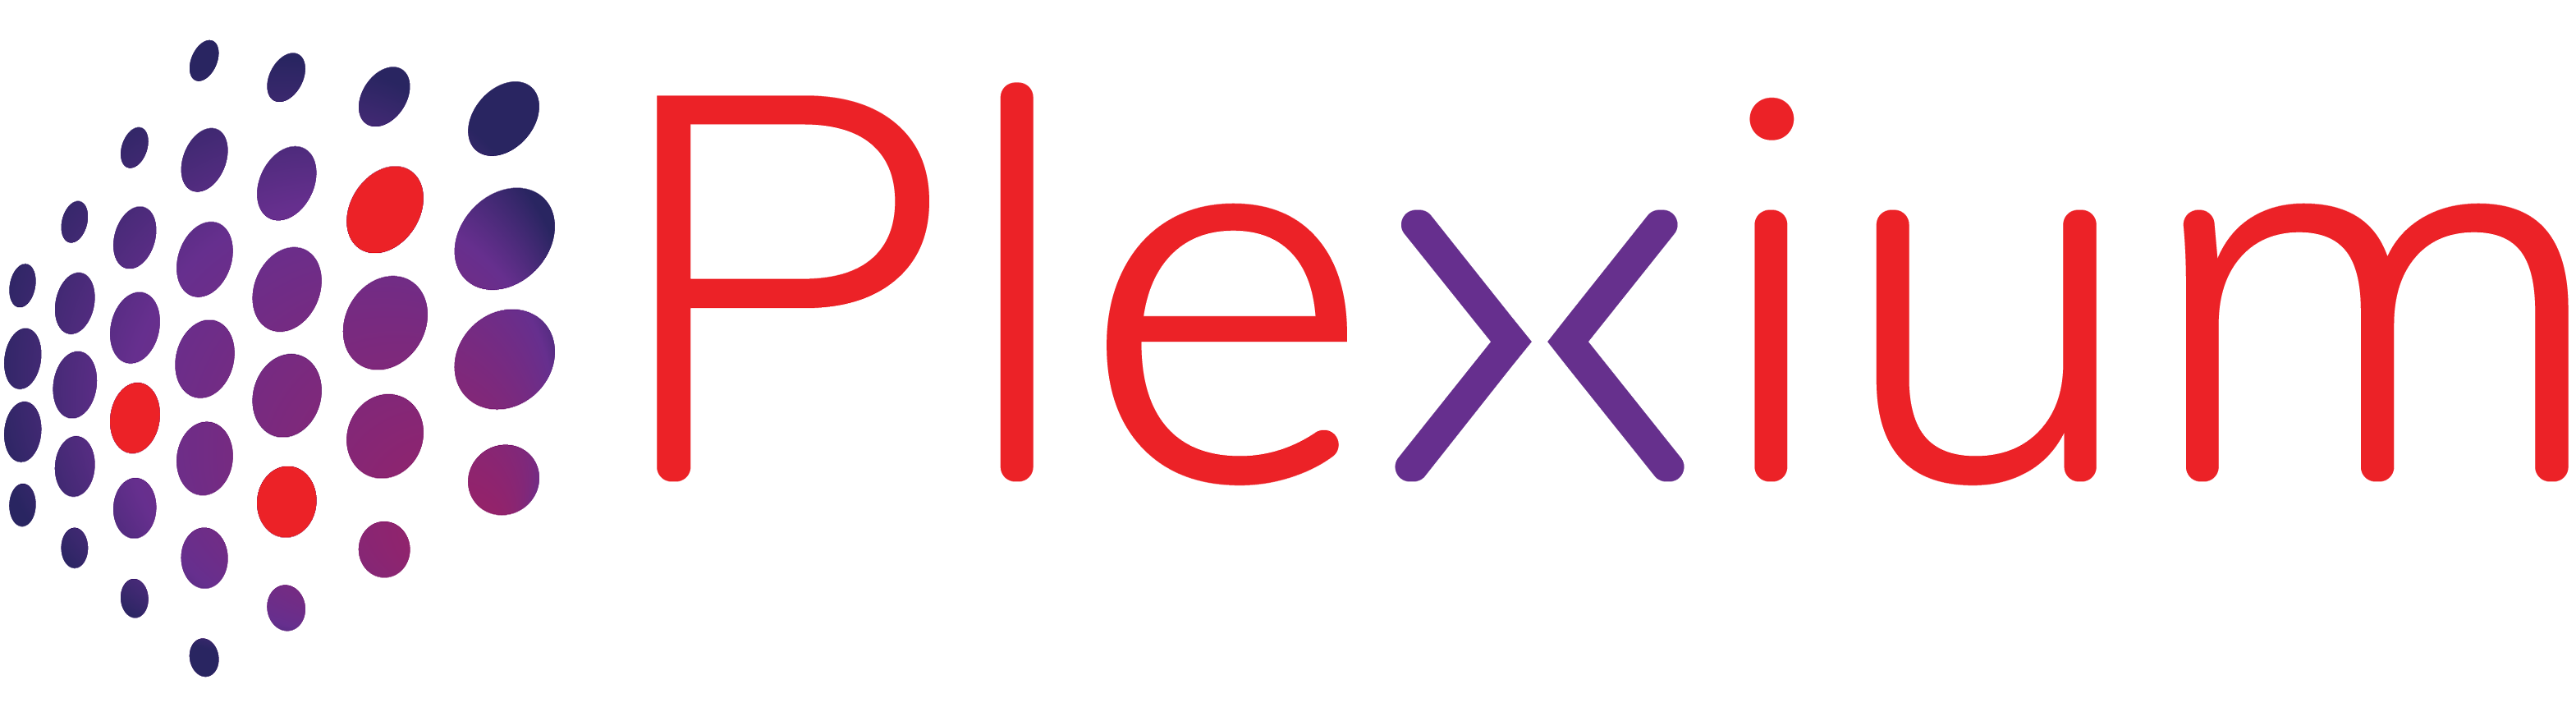 Vision Fund investment portfolio company Plexium's logo